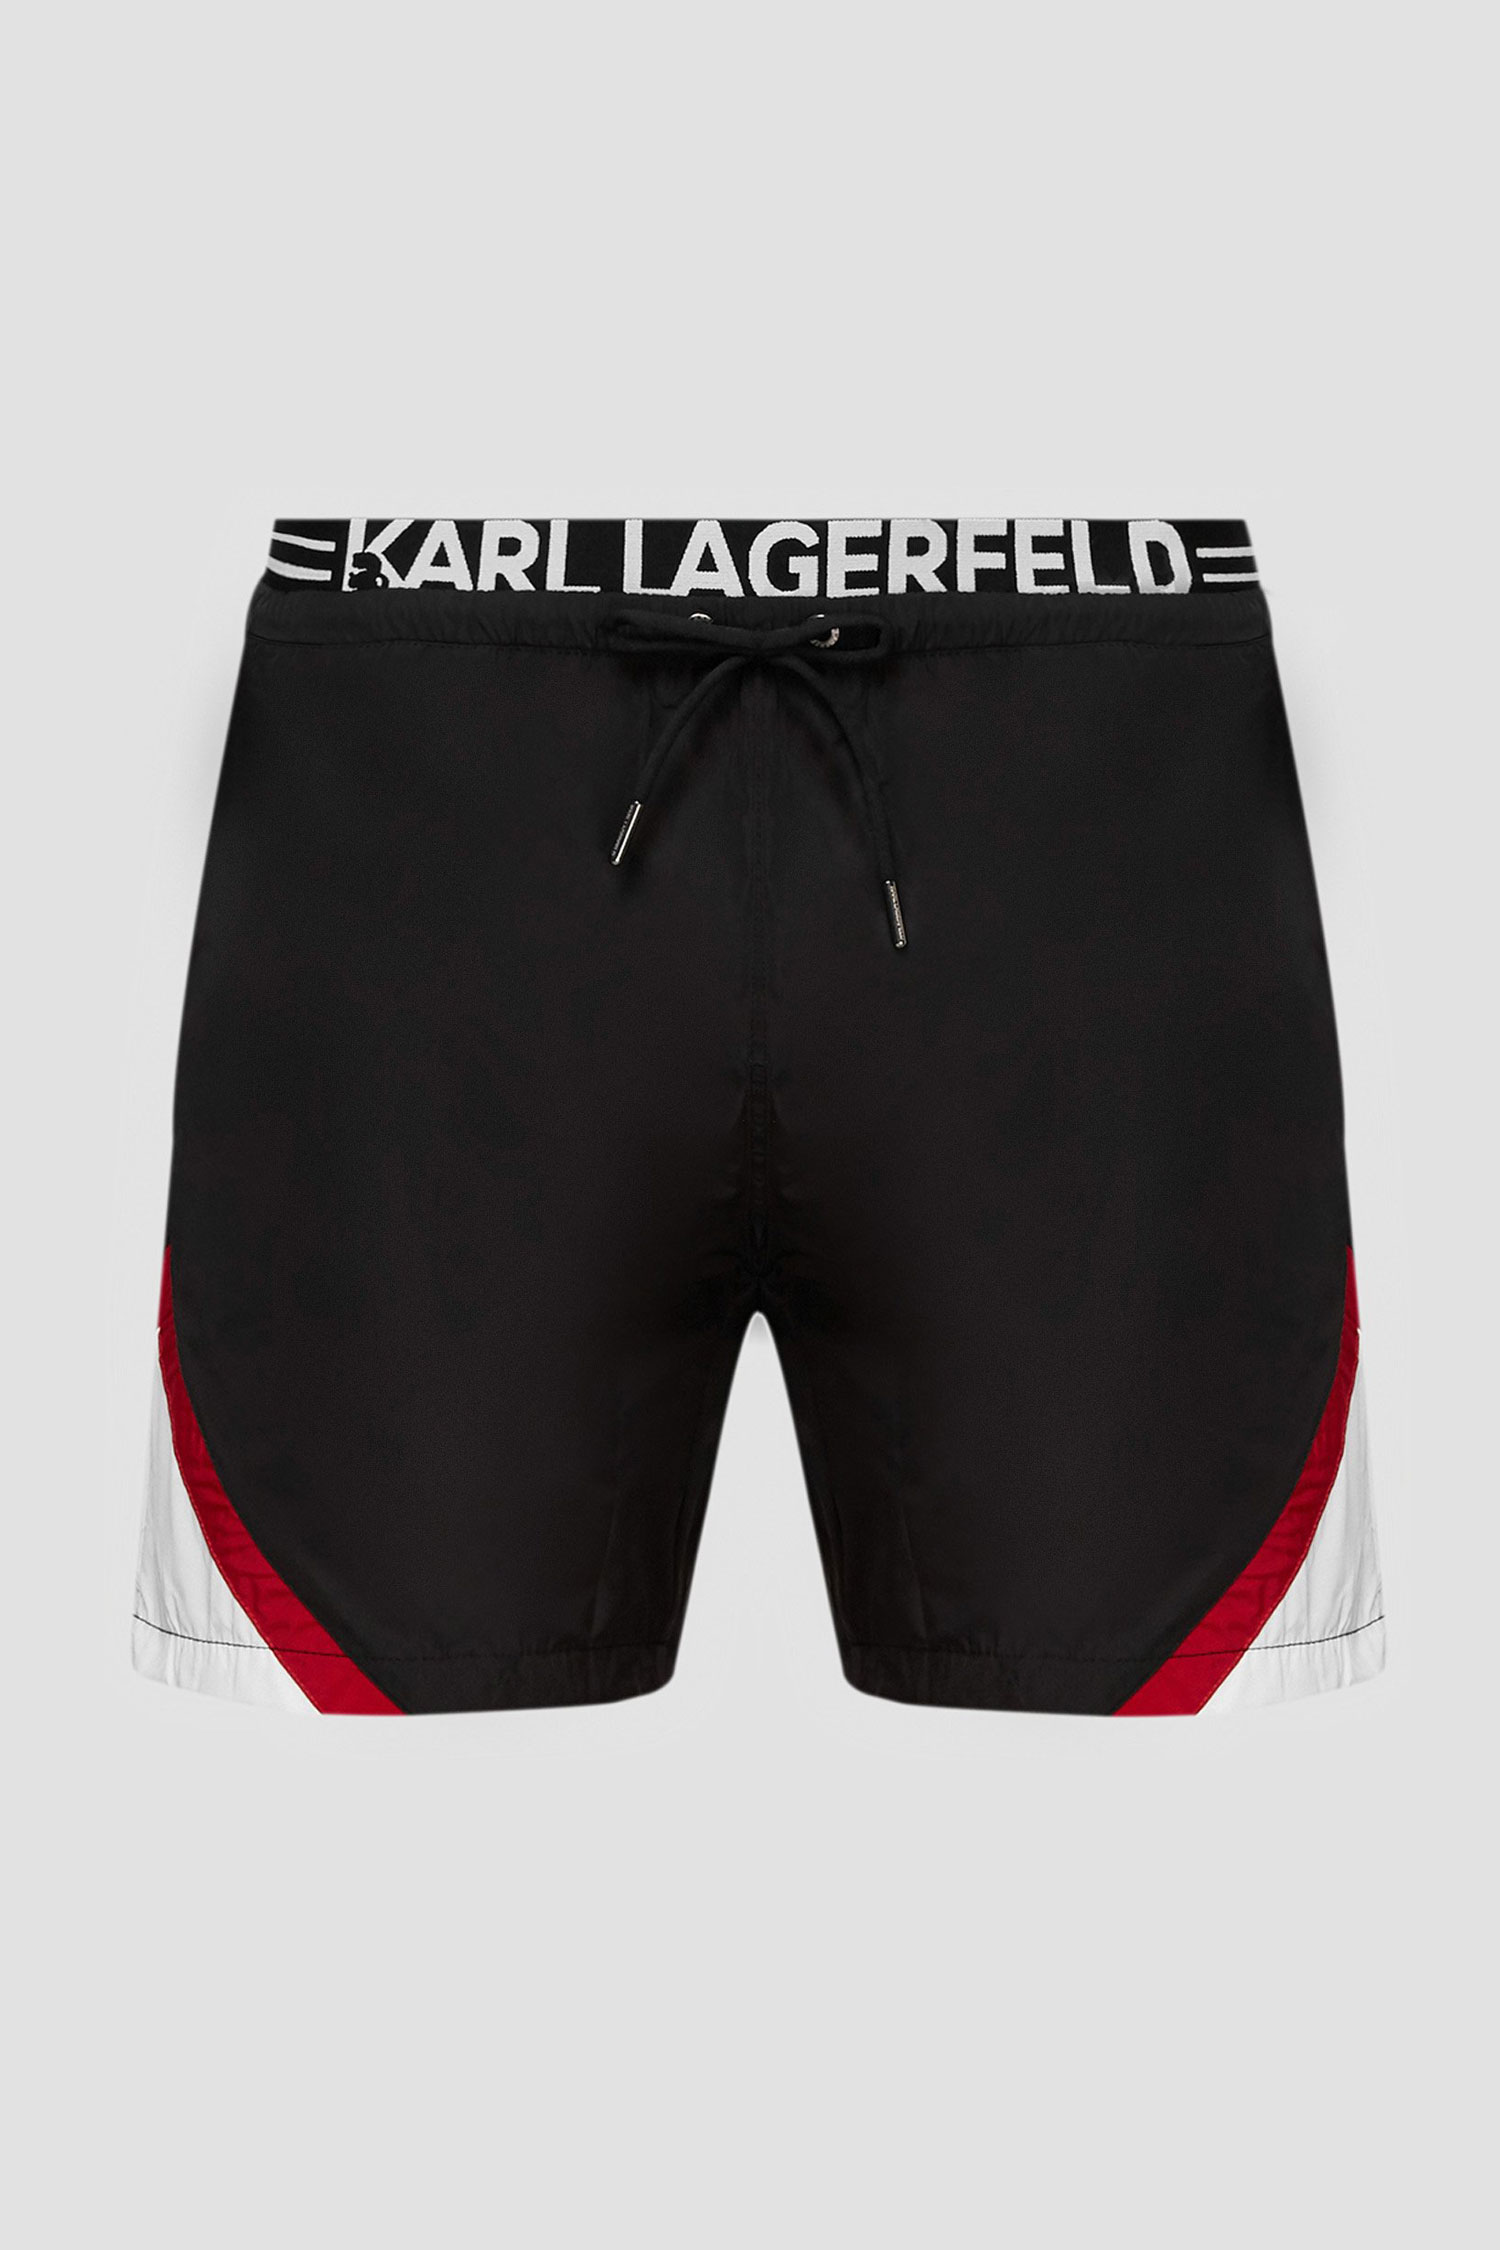 Мужские черные плавательные шорты Karl Lagerfeld KL20MBM05;Black